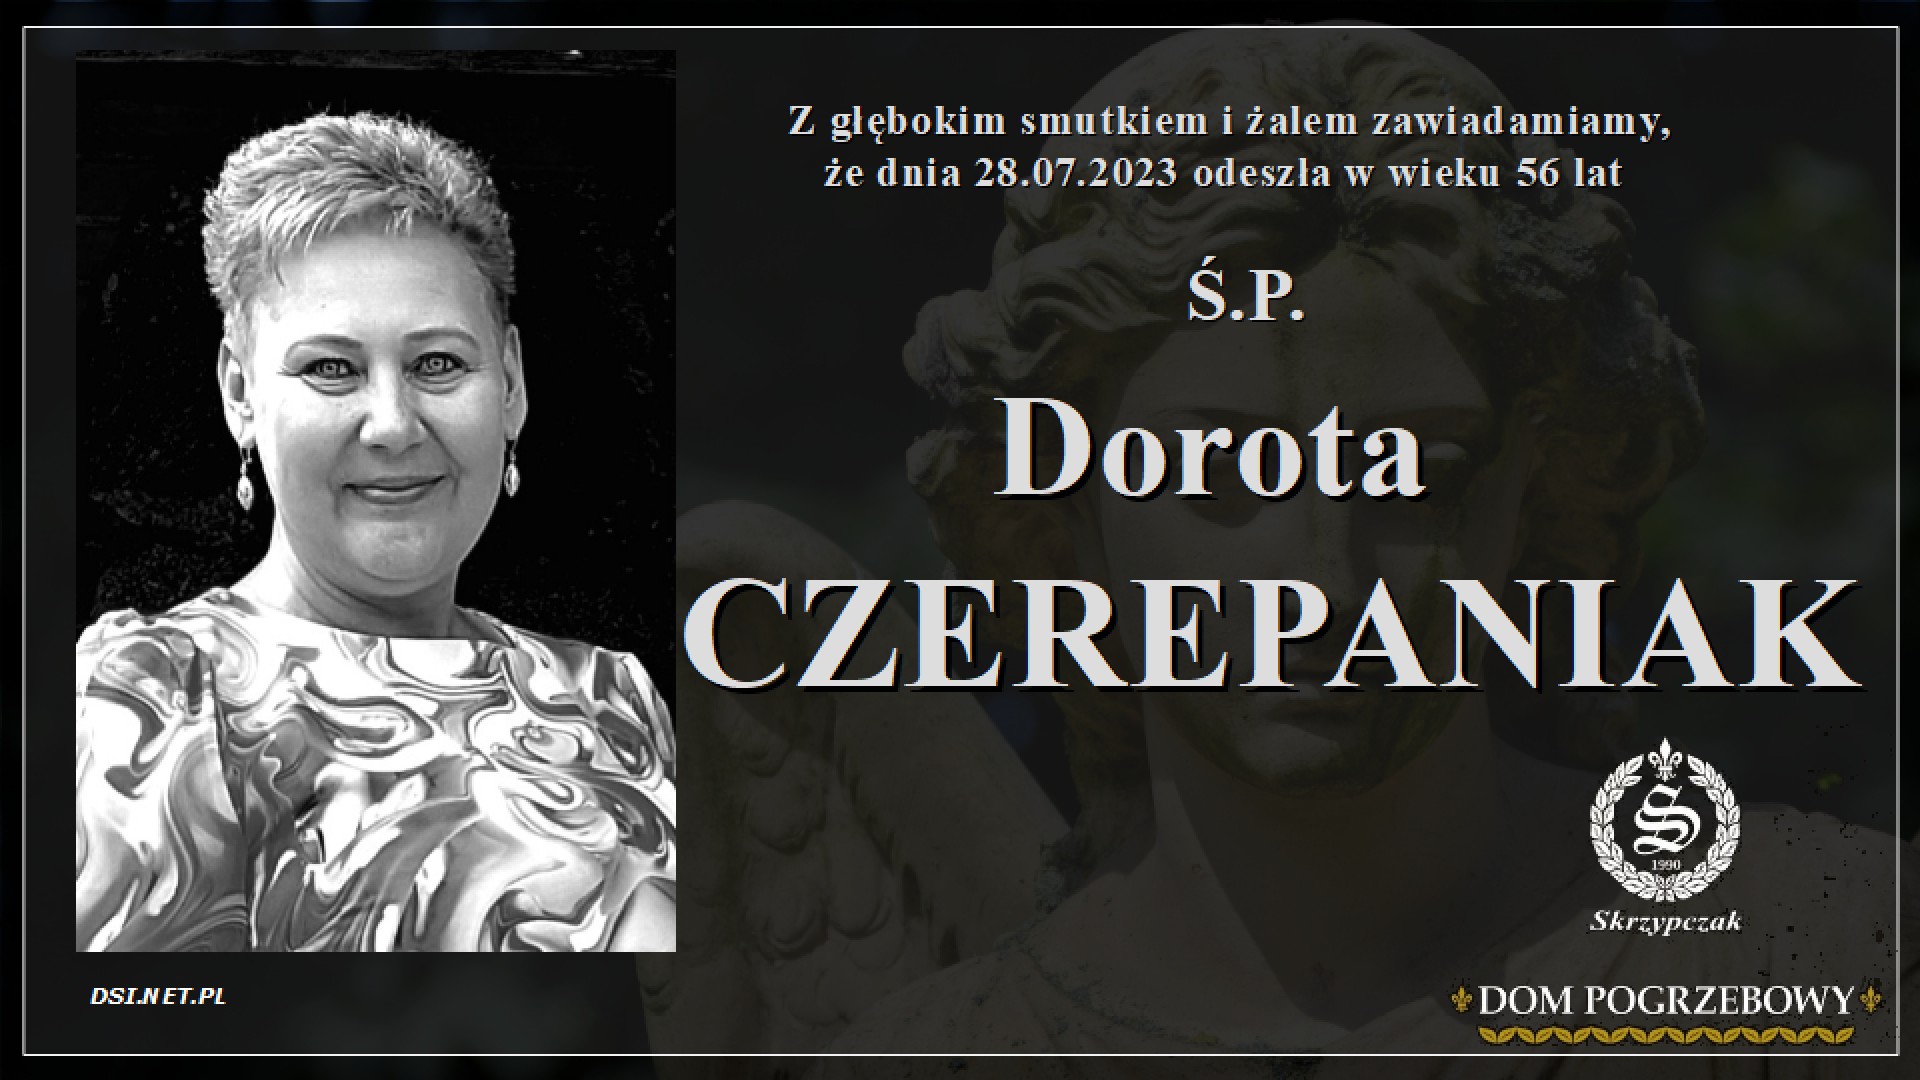 Ś.P. Dorota Czerepaniak